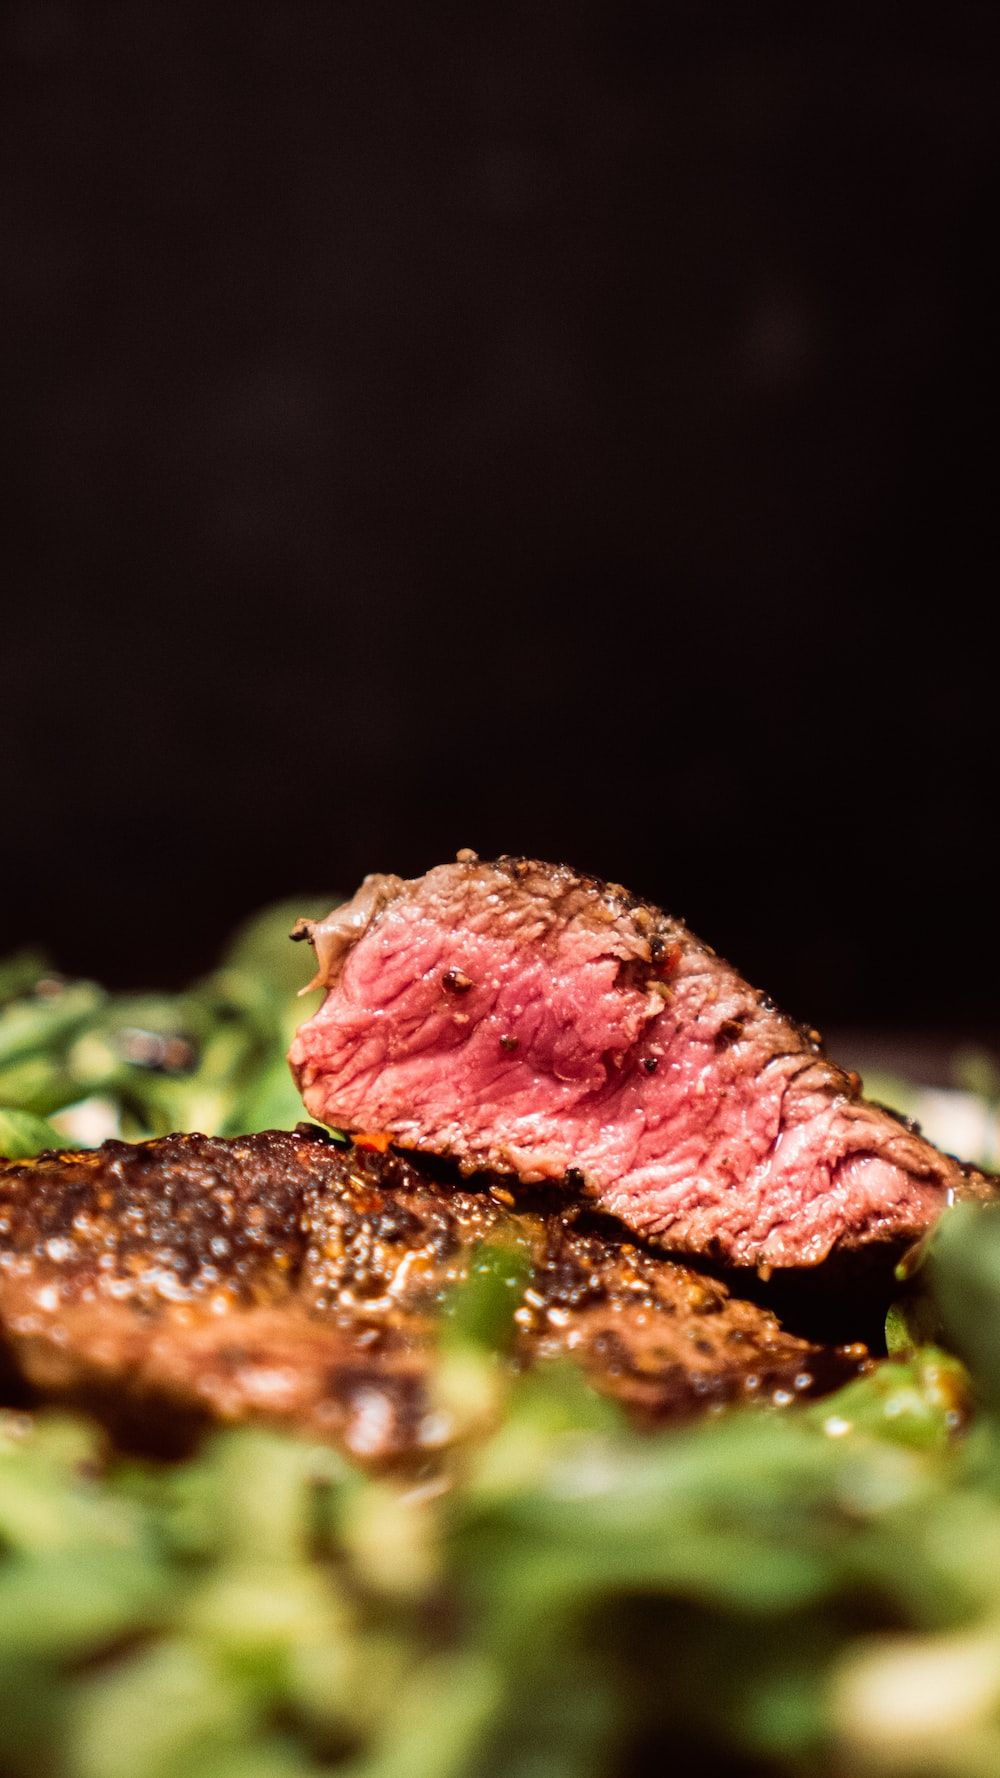  Fleisch Hintergrundbild 1000x1778. Steak Picture [HQ]. Download Free Image